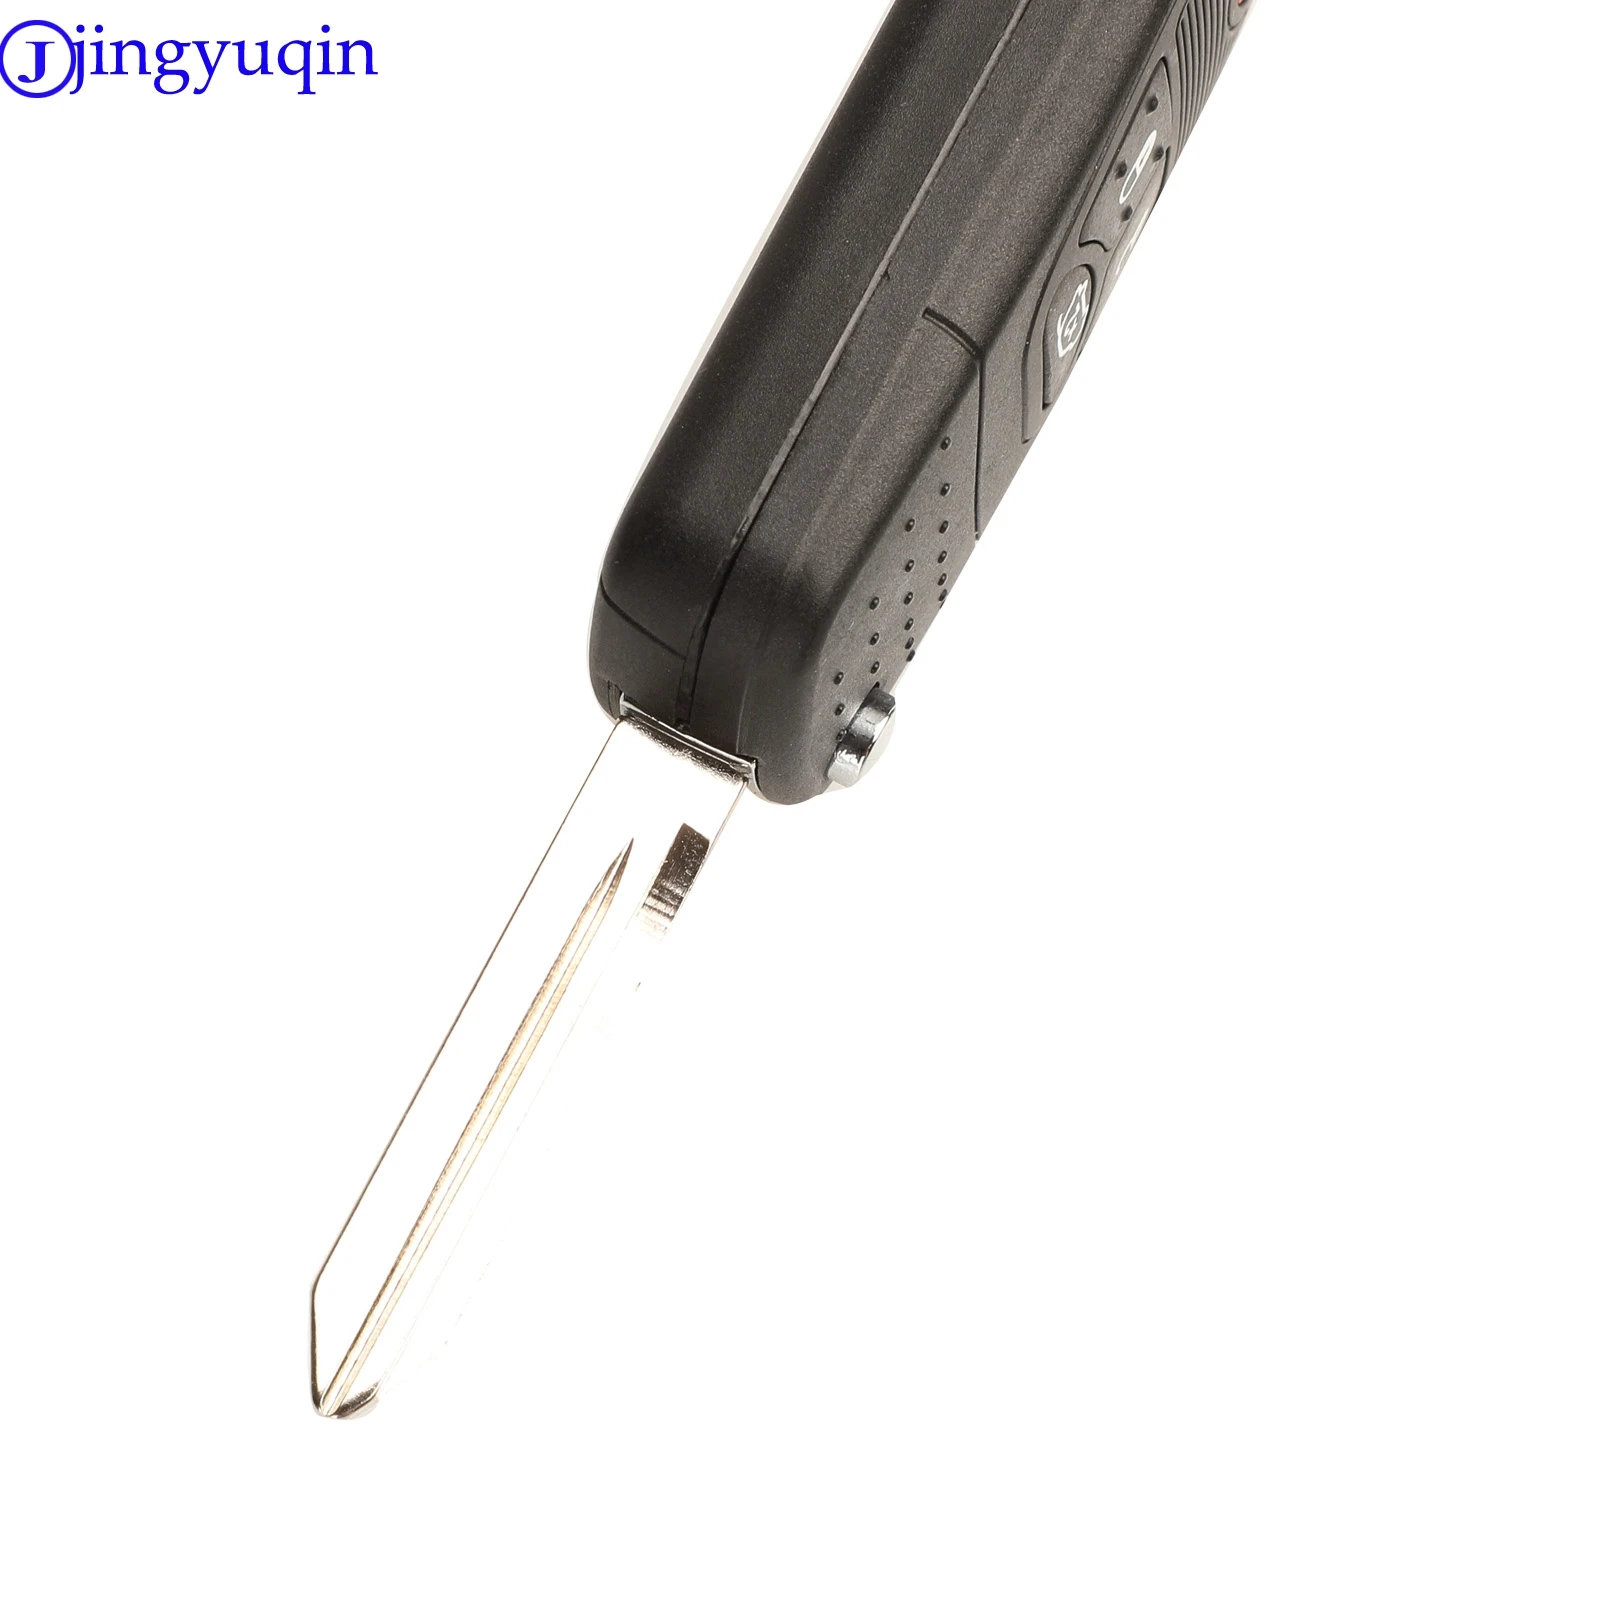 Jingyuqin откидной Складной Дистанционный автомобильный брелок для ключей, Стильный чехол для Chrysler Dodge Jeep Avenger Nitro 3 кнопки